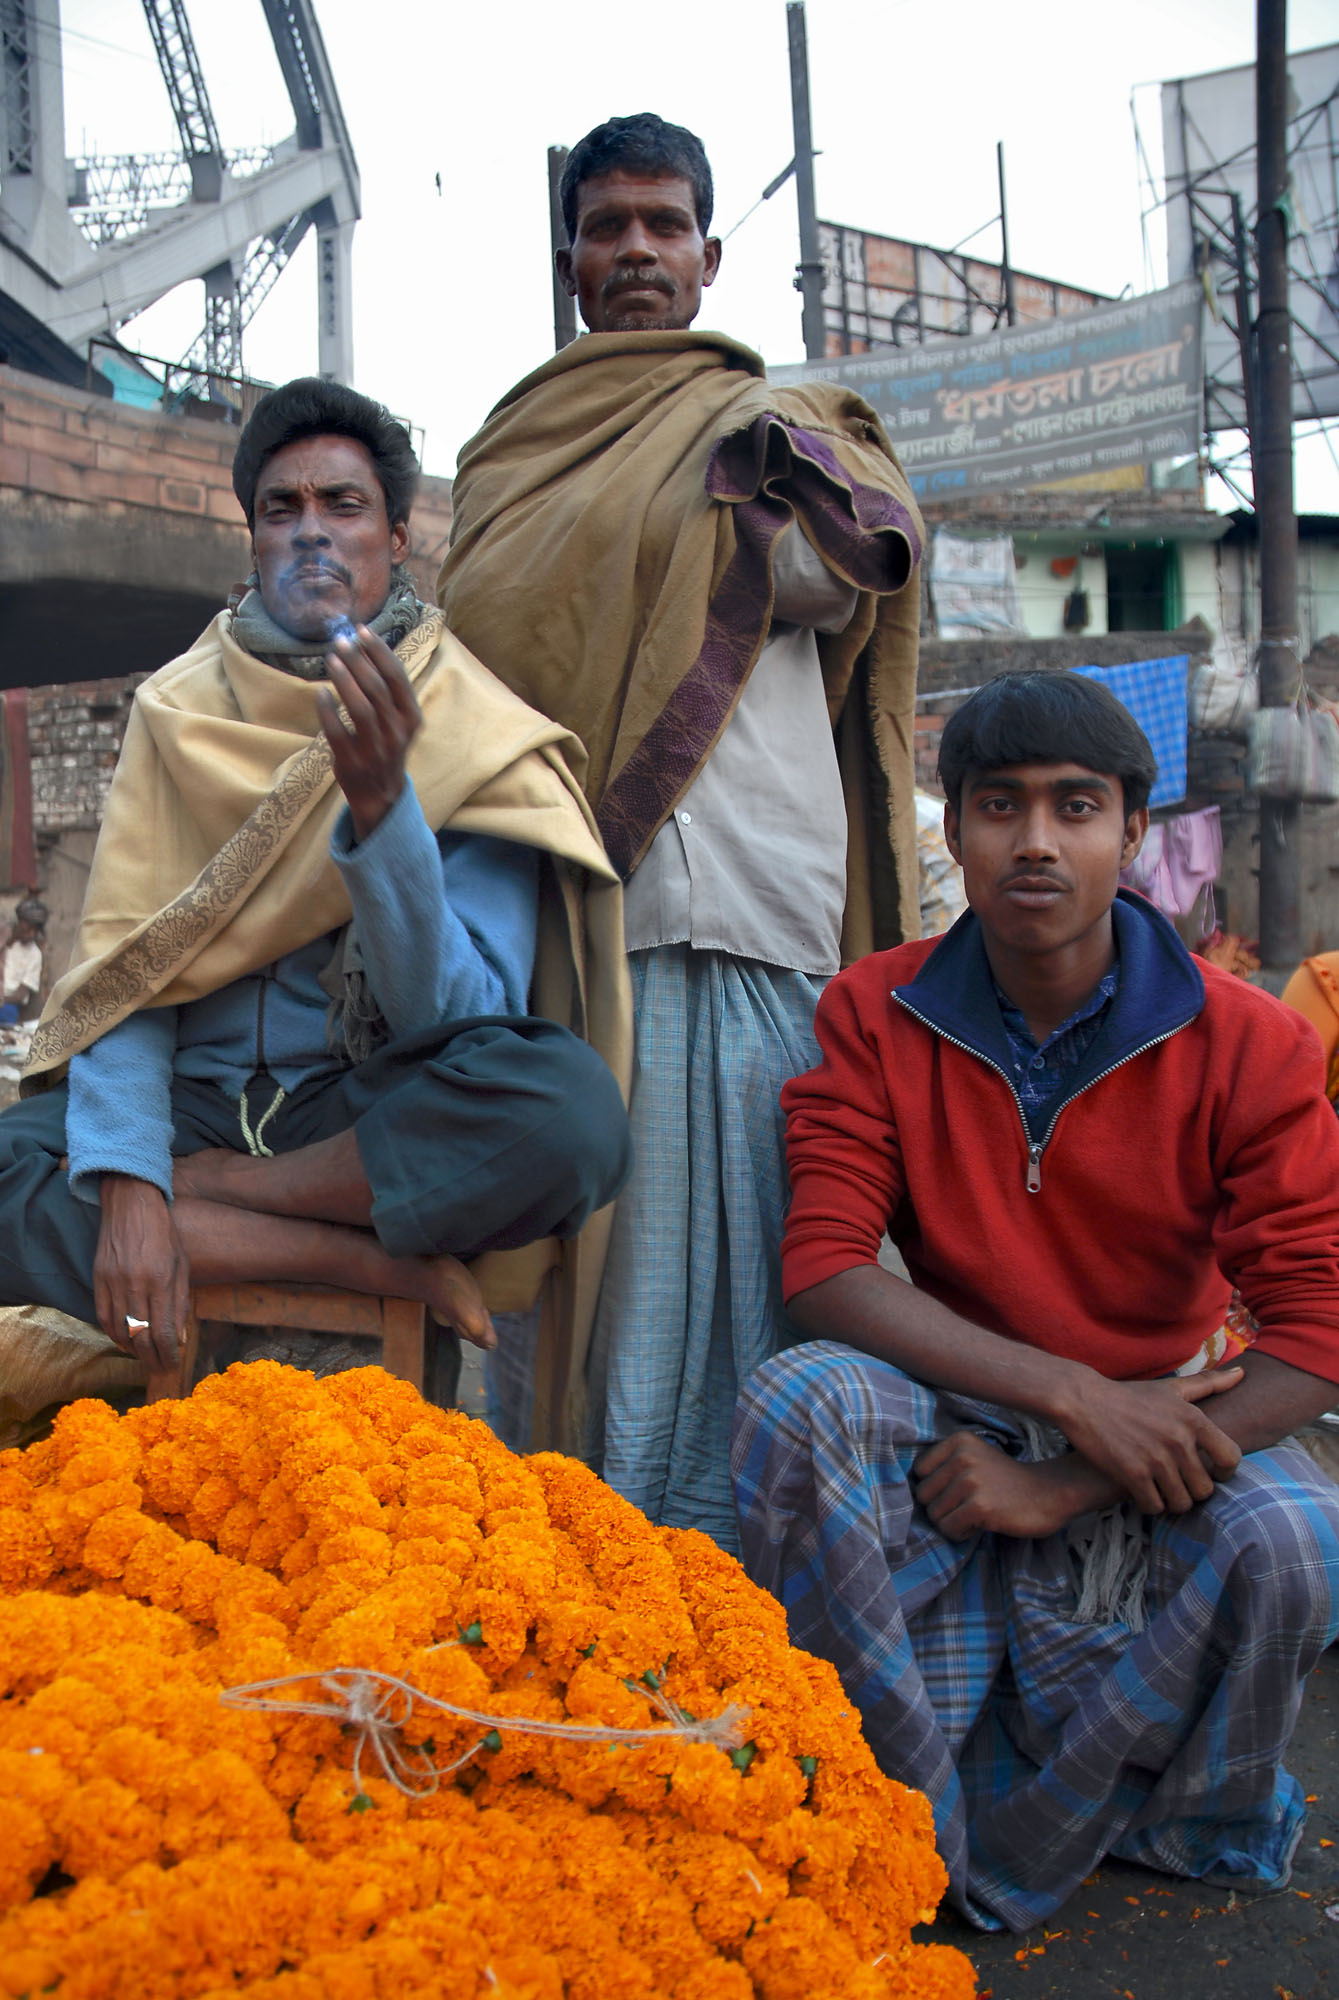 bill-hocker-flower-market-vendors-kolkata-india-2007